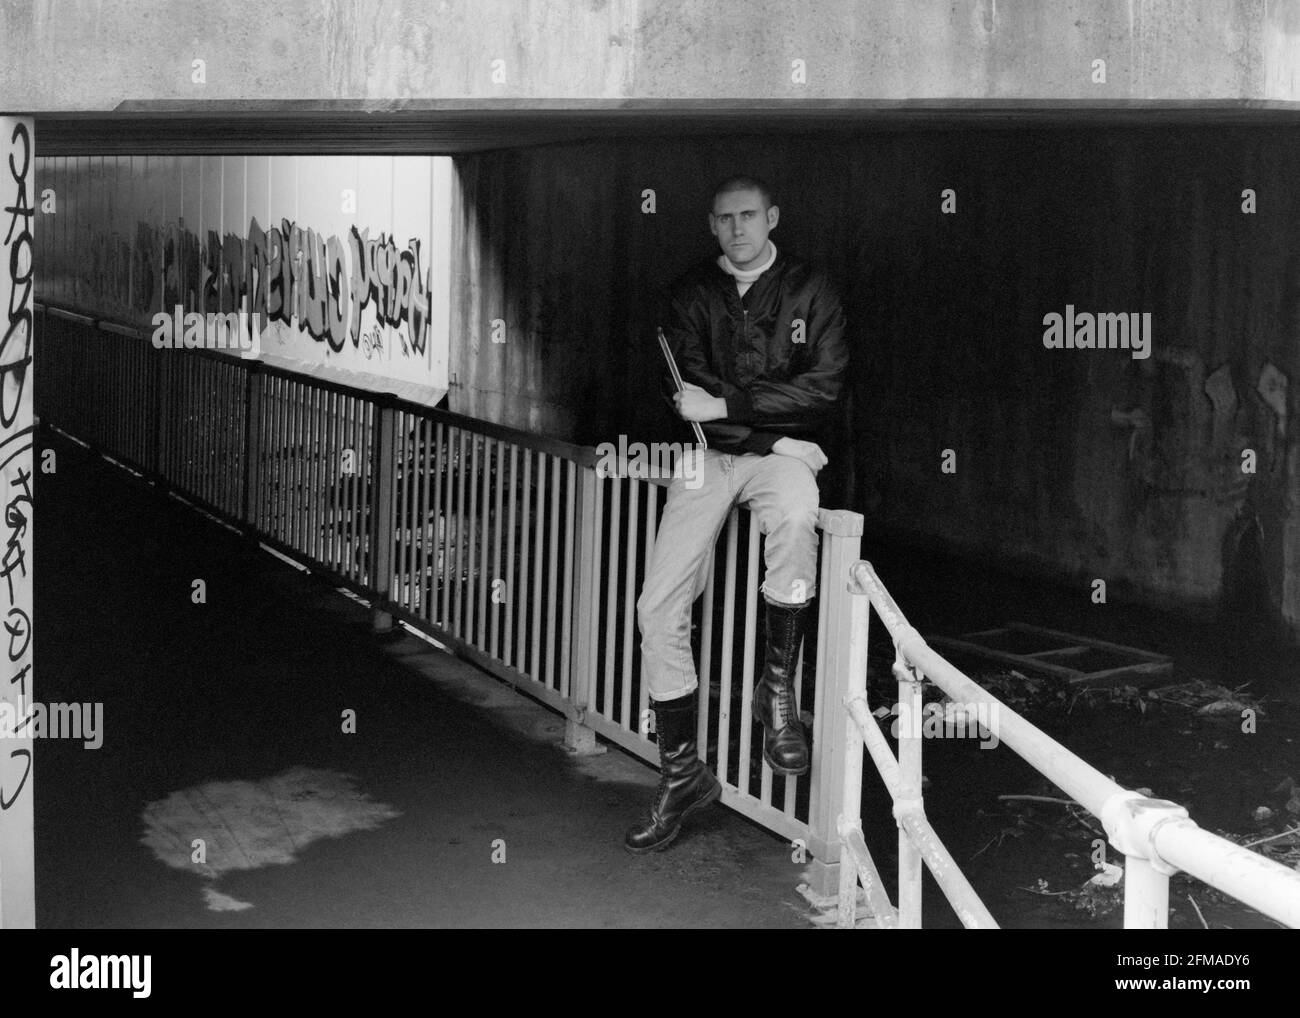 jeune homme skinhead debout dans les graffitis couvert ville faiblement éclairée pneu de retenue de passage inférieur central en fonte années 1990 angleterre royaume-uni Banque D'Images